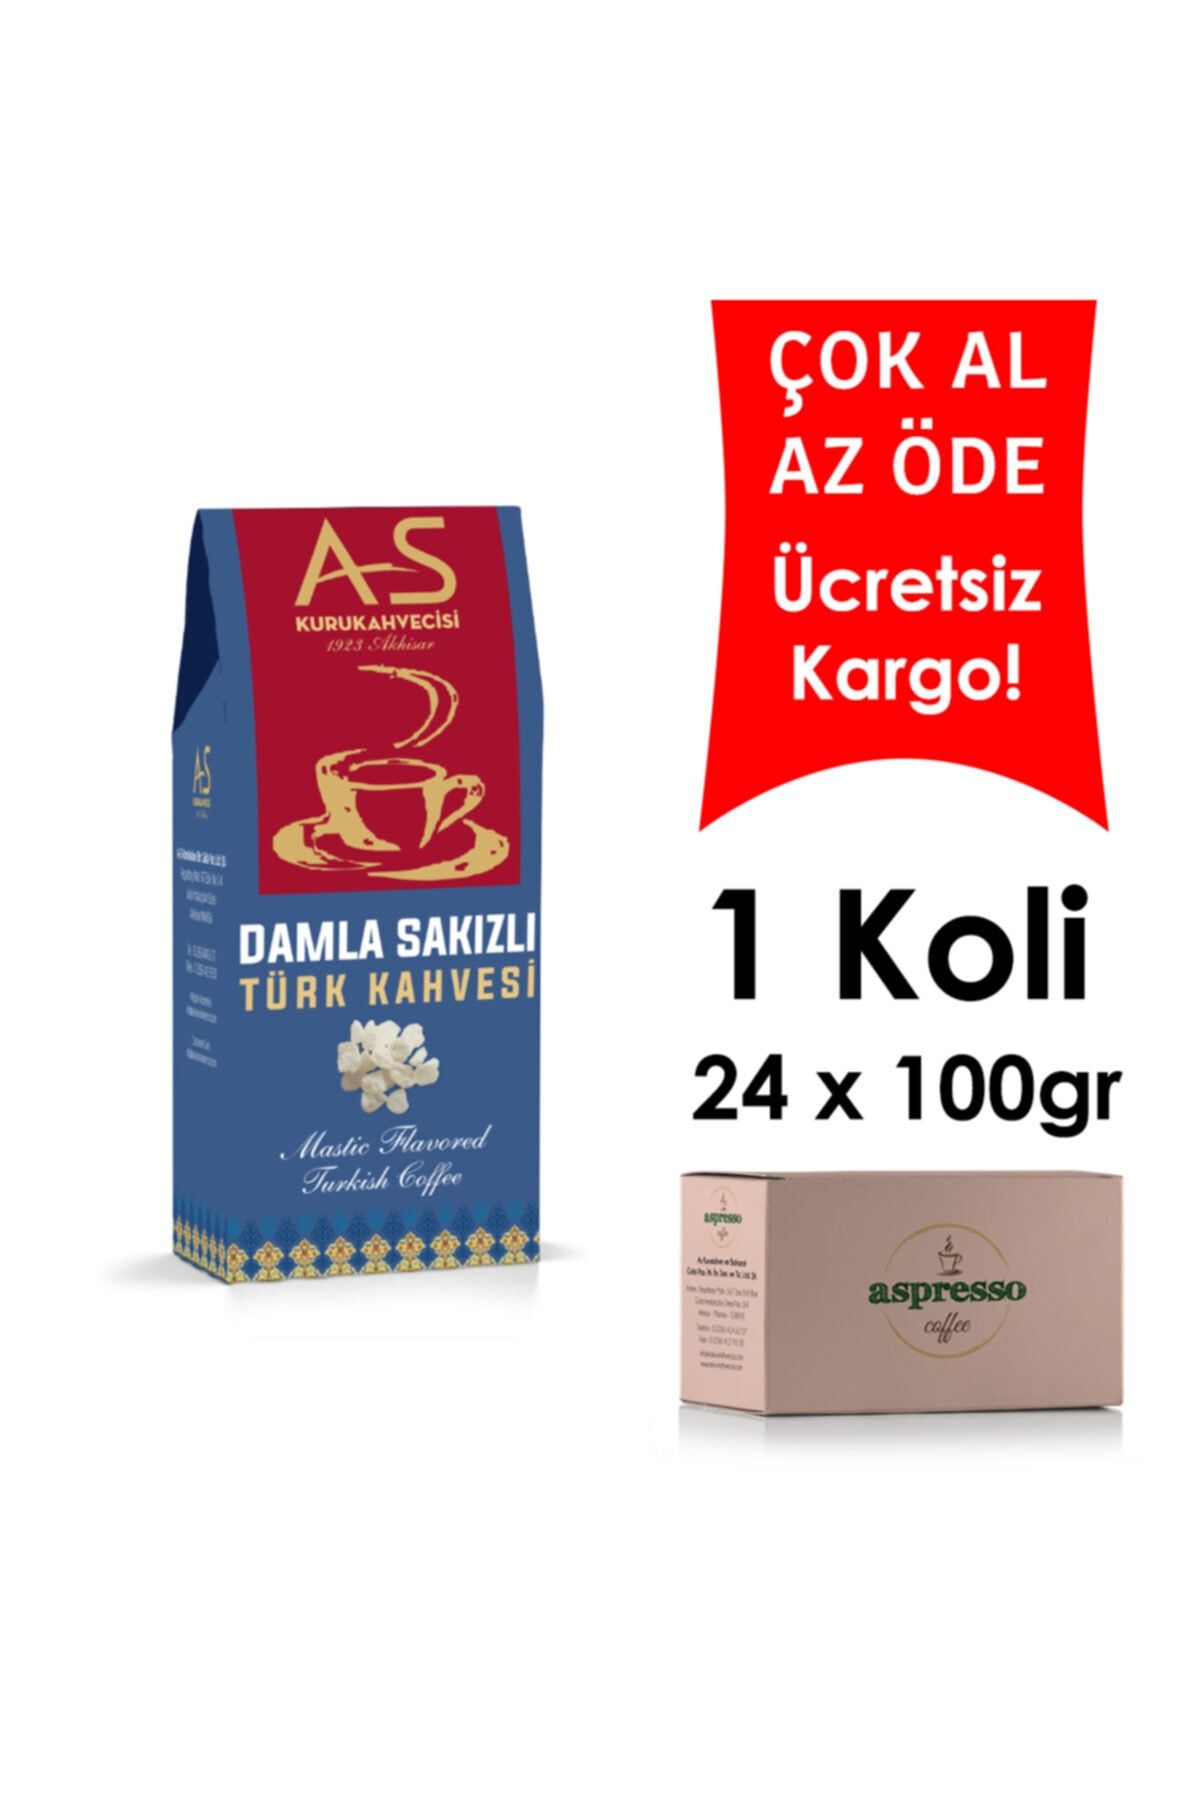 AS Kurukahvecisi Damla Sakızlı Türk Kahvesi 100 Gr. Kutu X 24 Adet